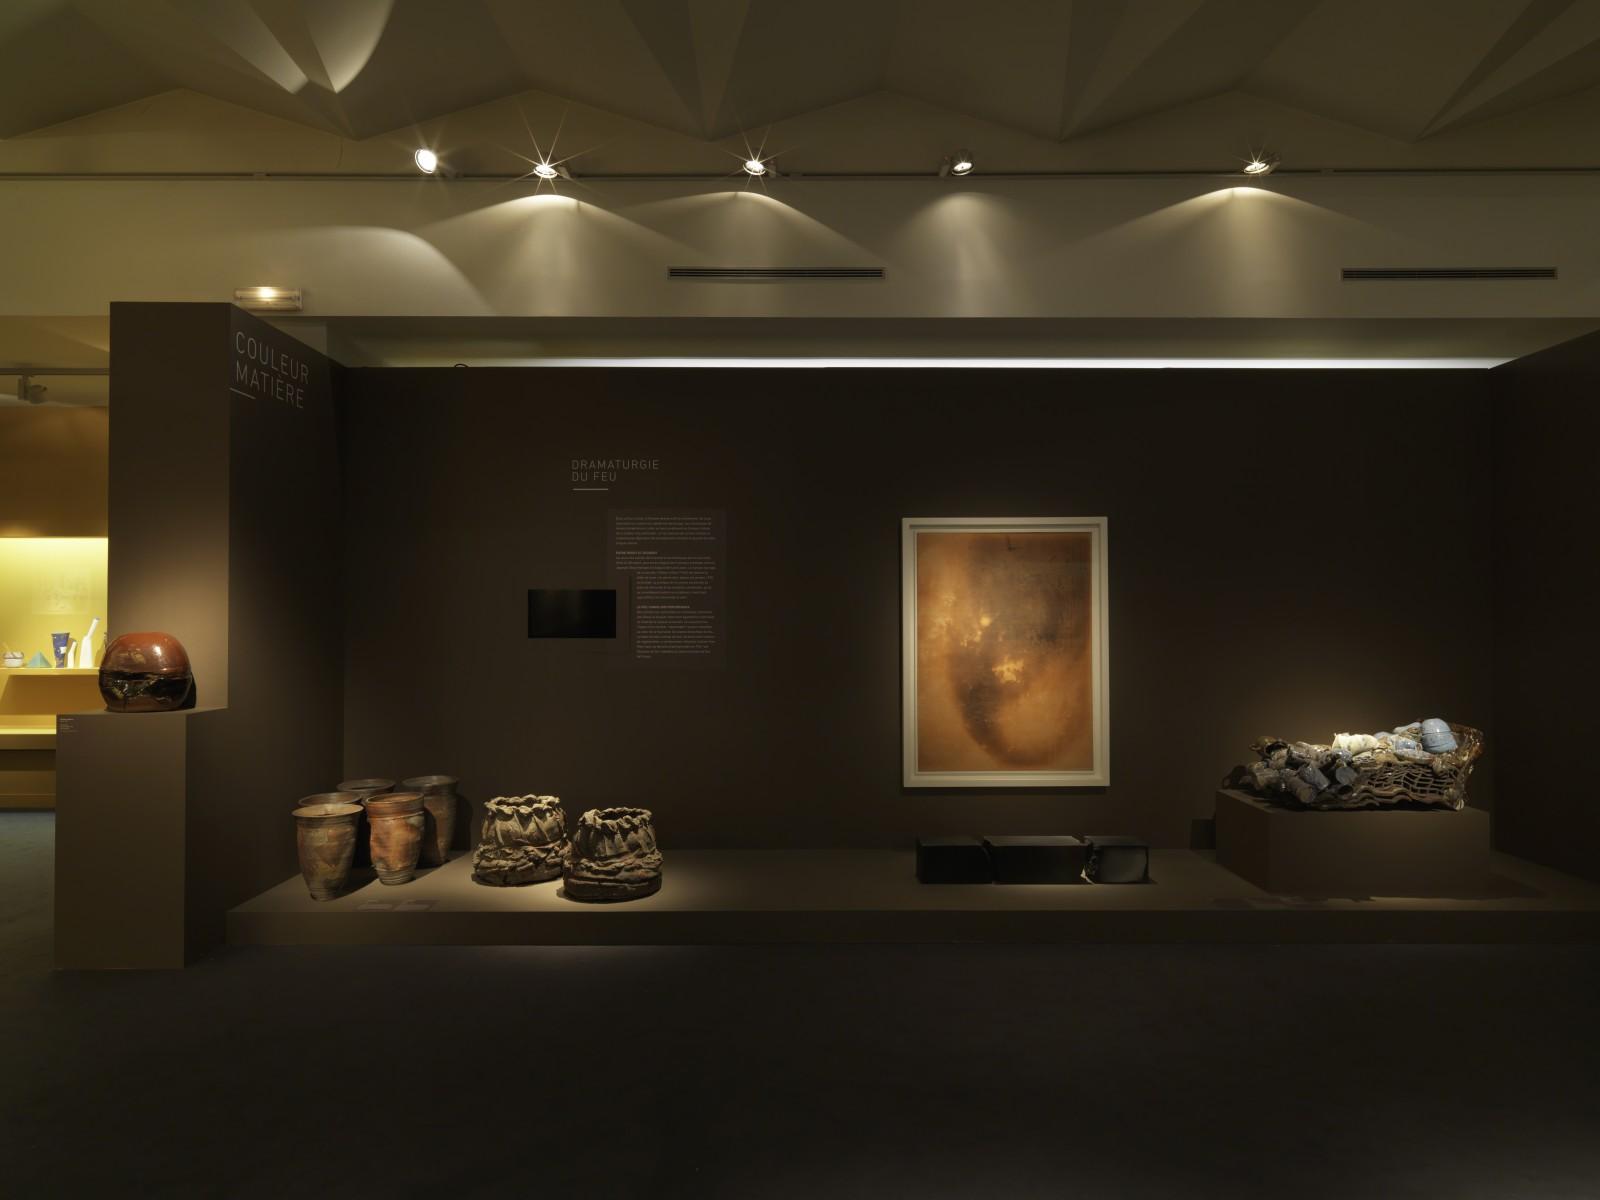 Vue de l'exposition "L’expérience de la couleur", Musée nationale de céramique, 2017 (F 74)